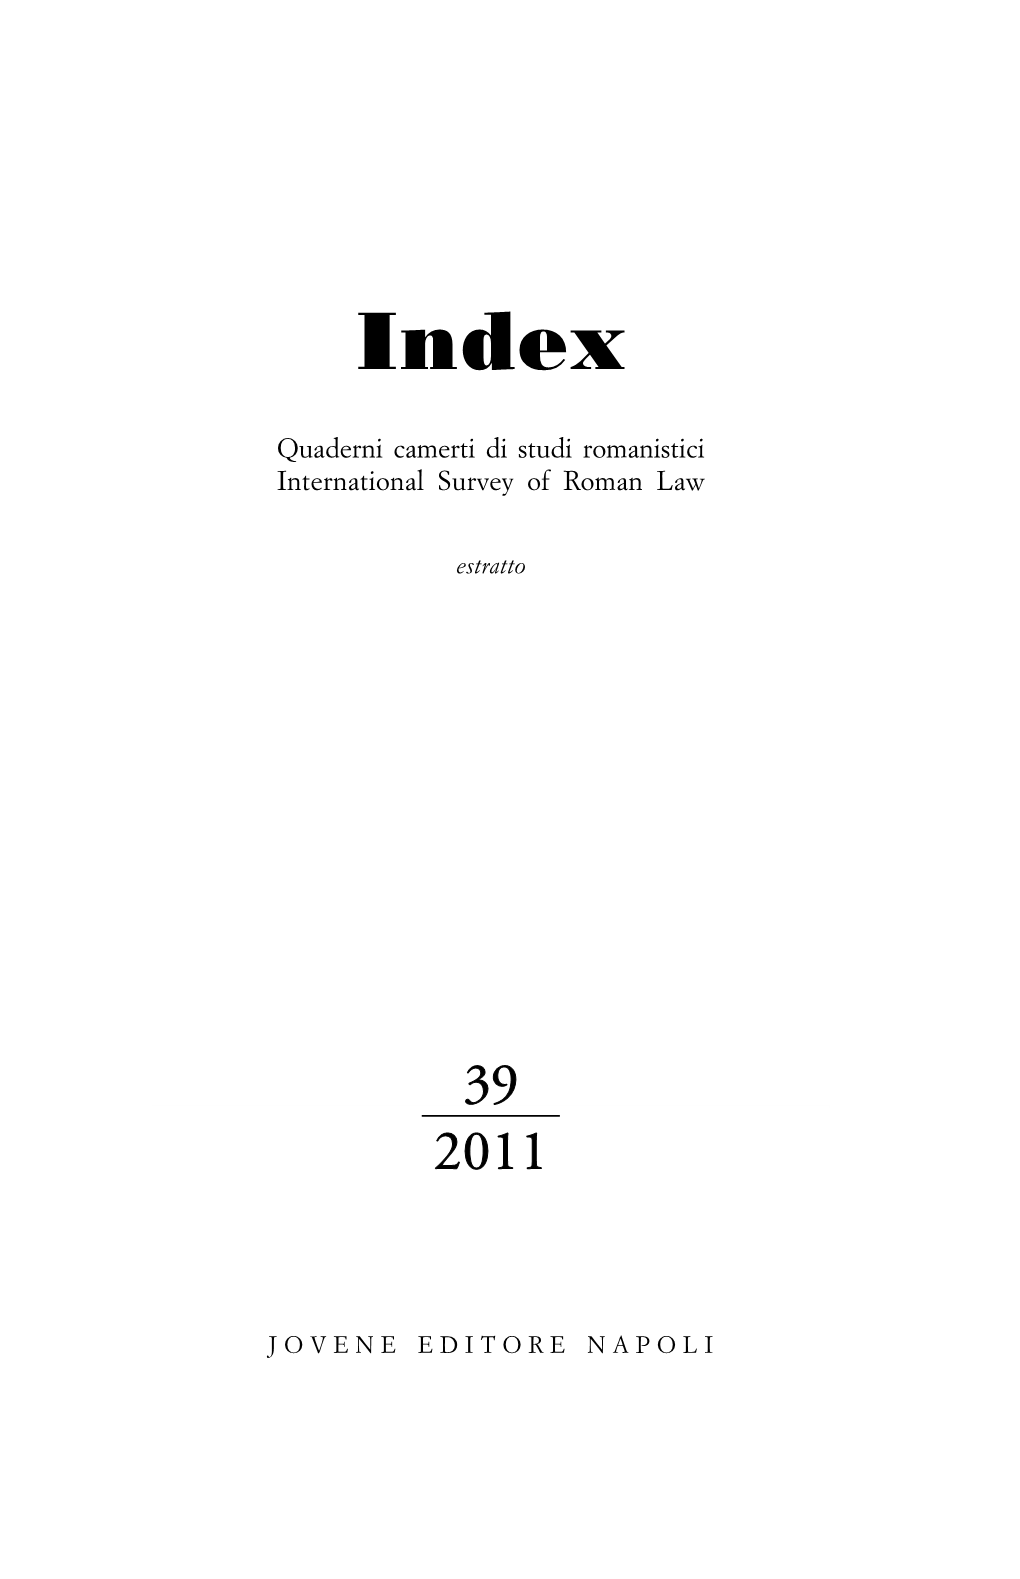 Index-Magistrature-Italiche.Pdf